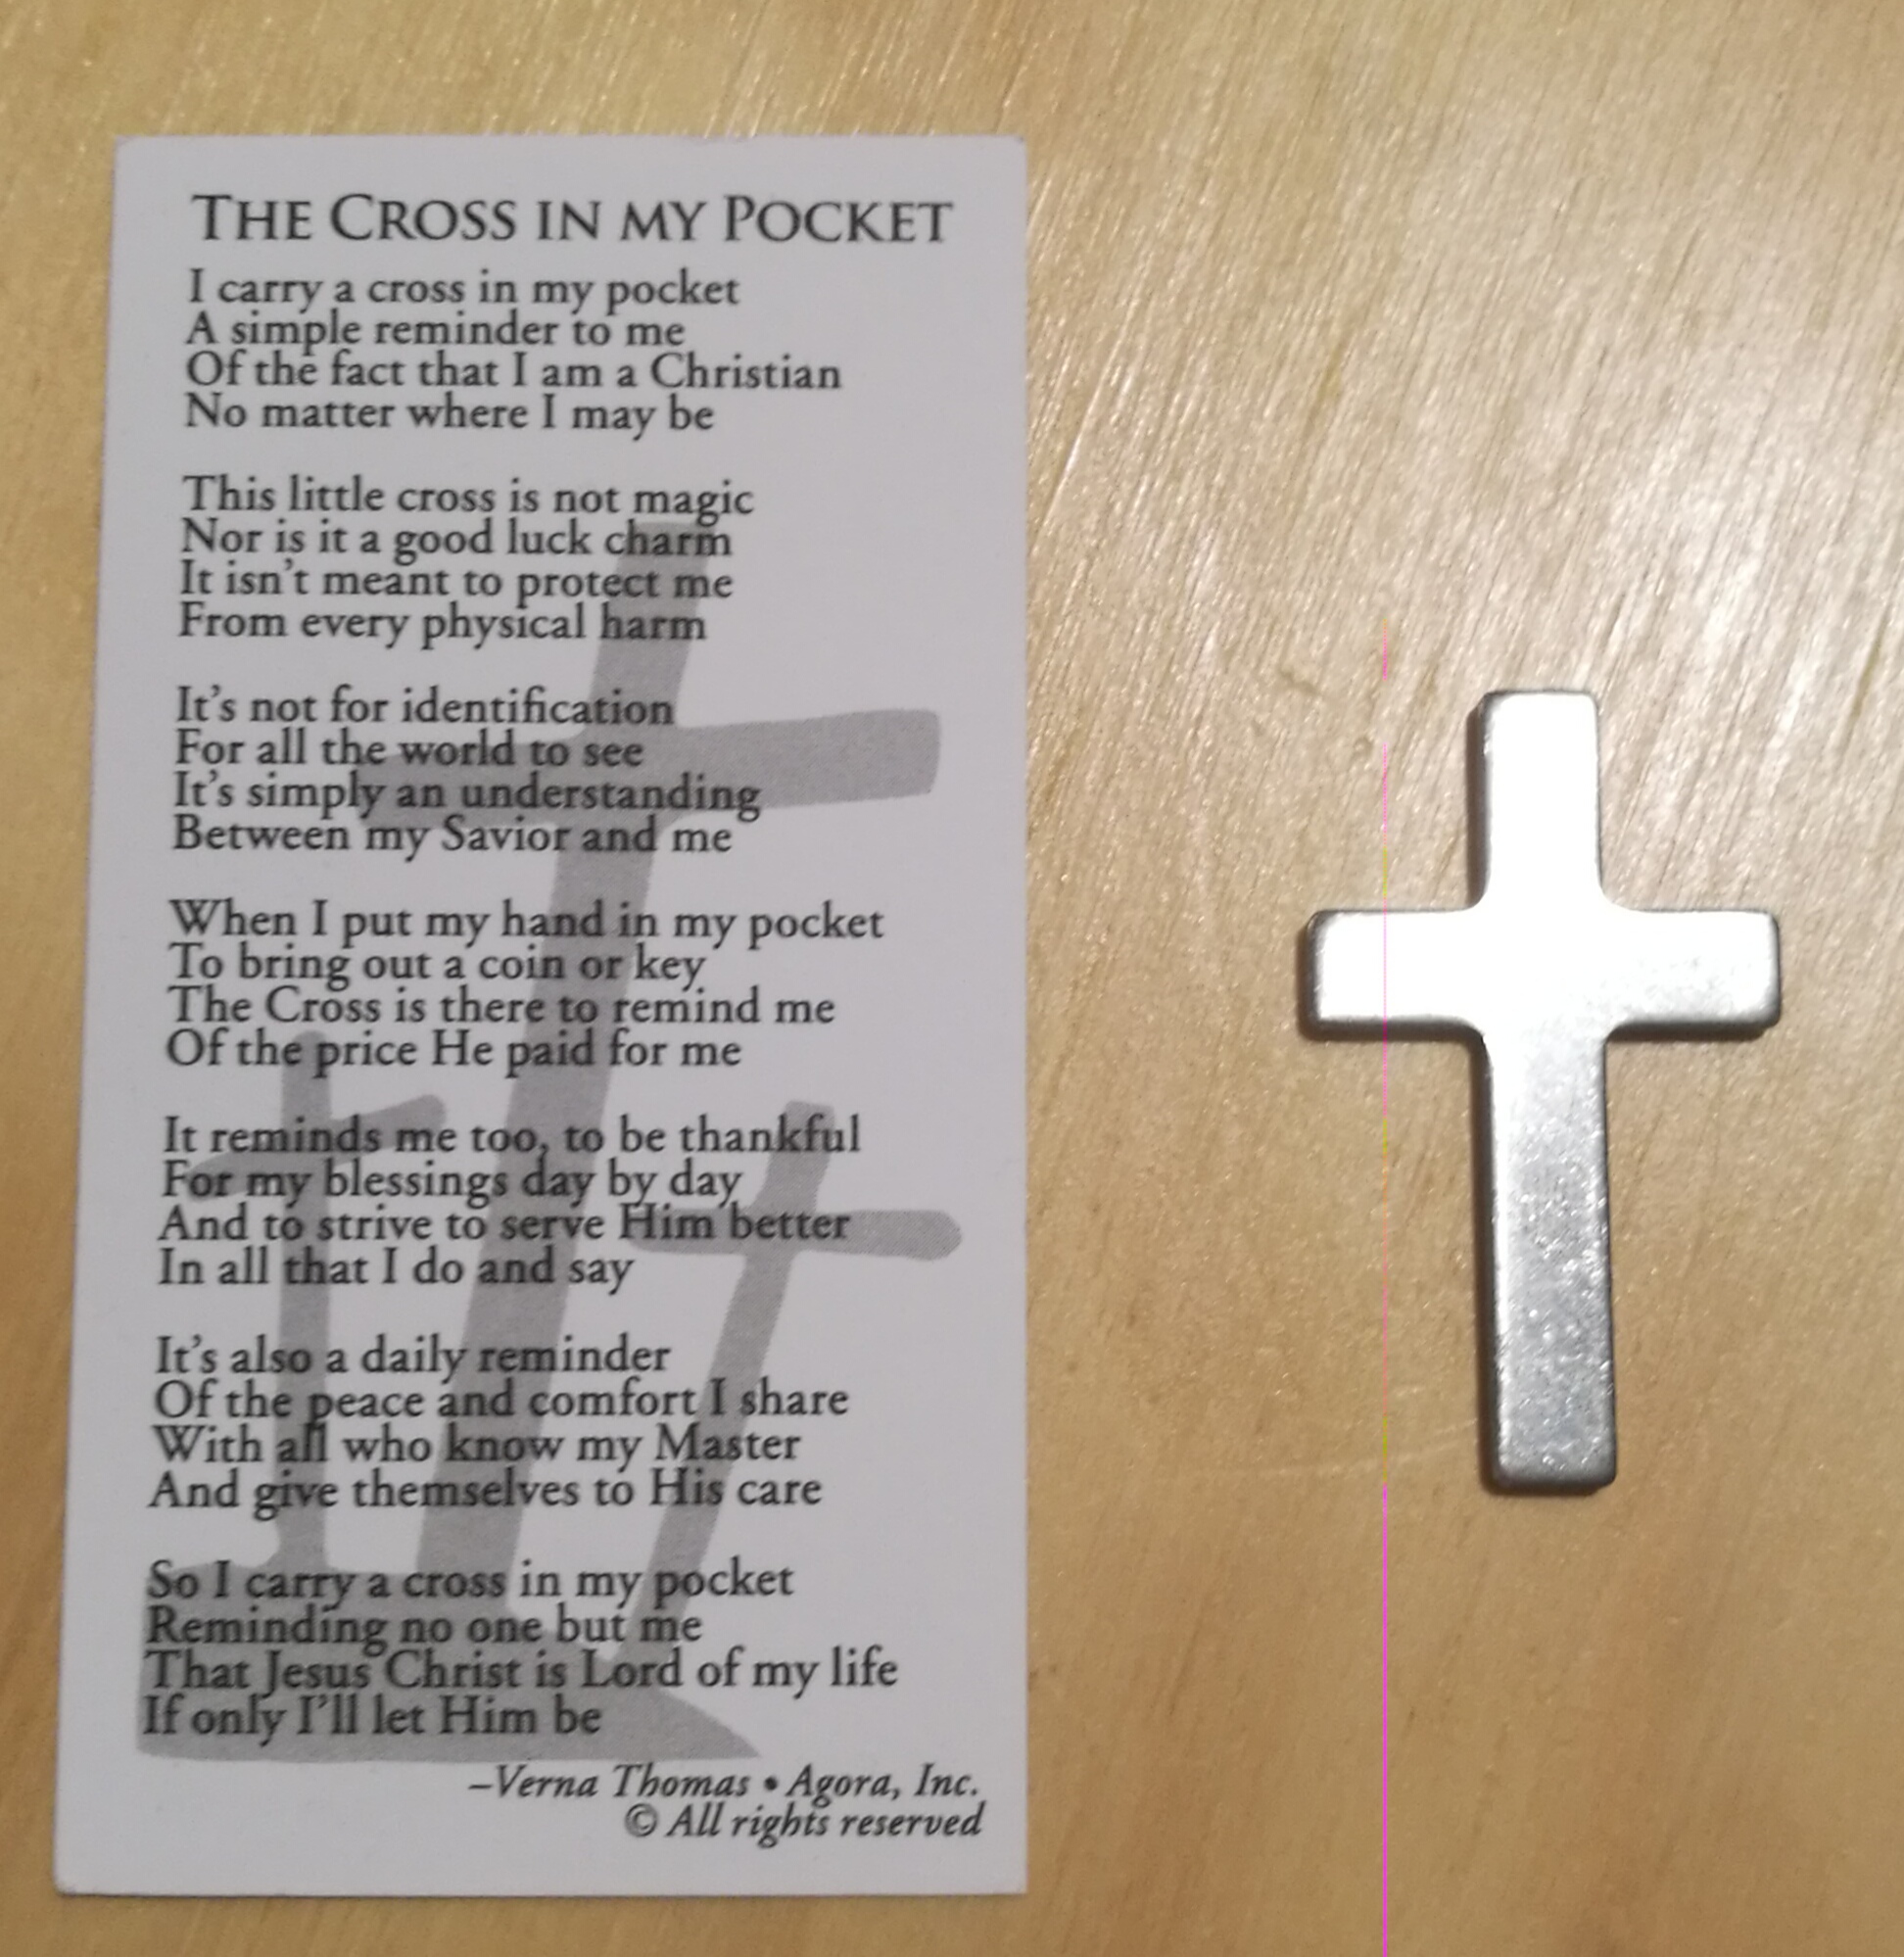 A cross in my pocket